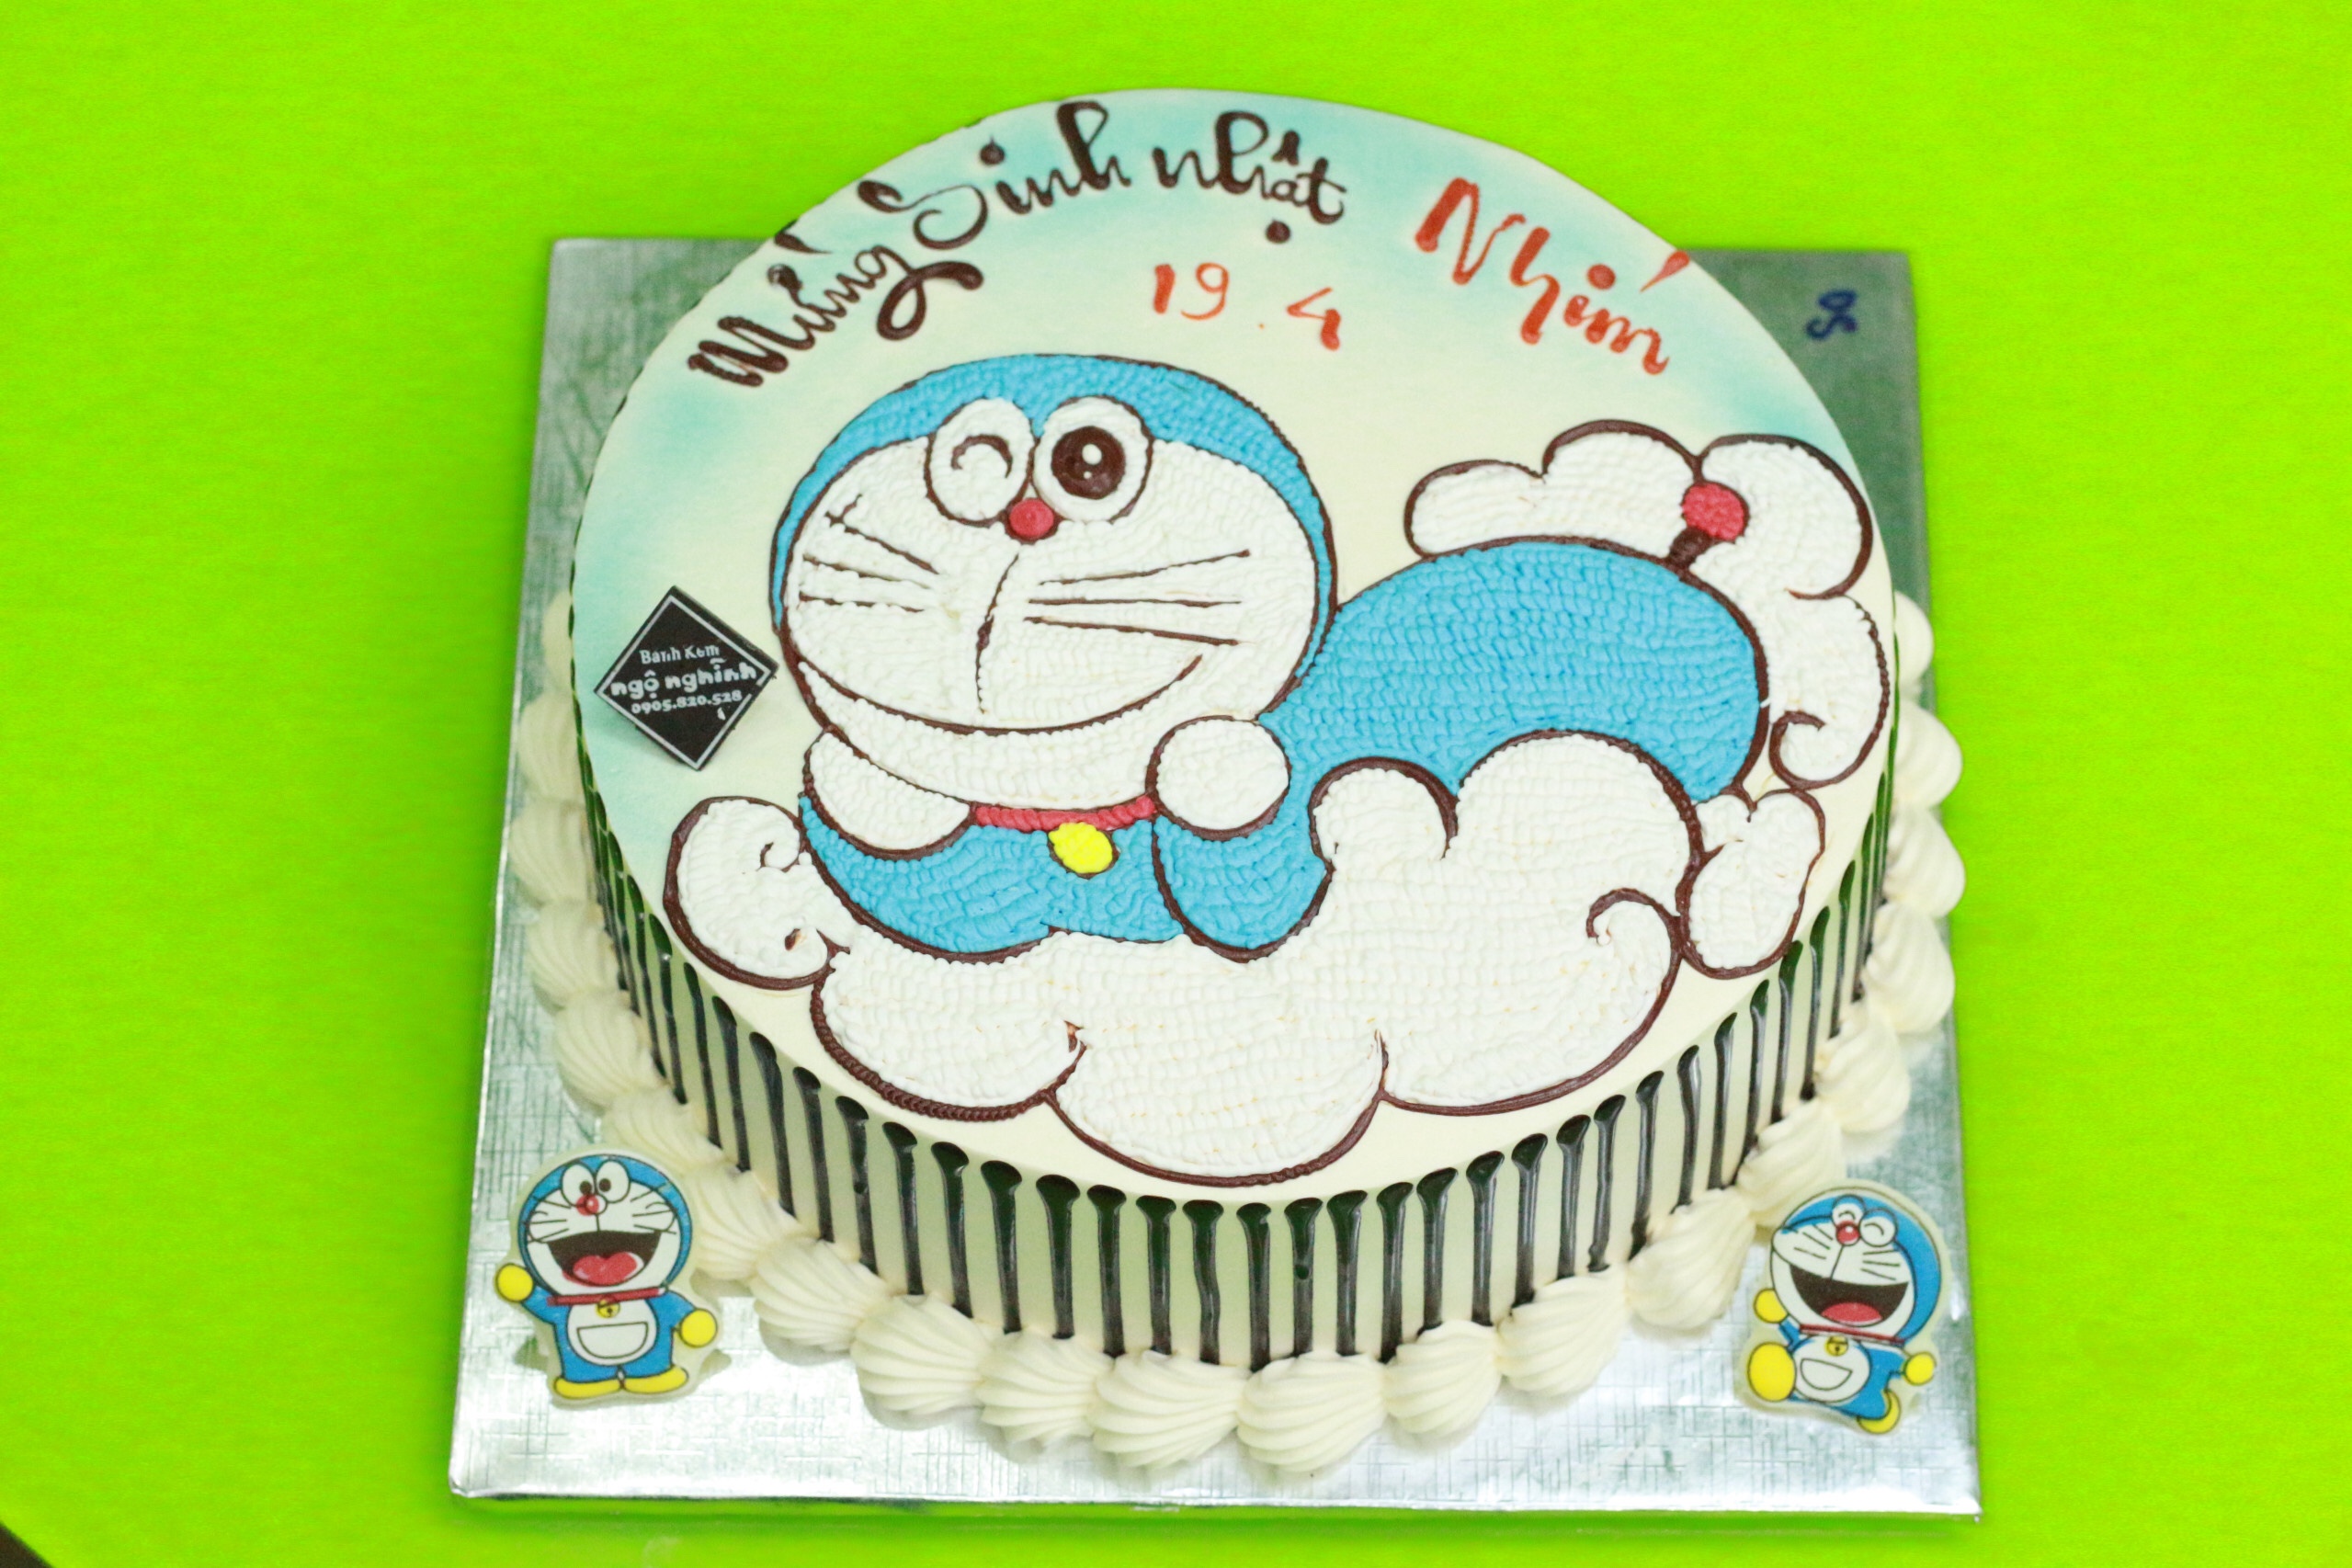 Bánh vẽ Doraemon là món ăn vừa ngon miệng và dễ thương, hình ảnh Doraemon được thể hiện trên chiếc bánh sẽ khiến bạn cảm thấy thích thú. Đủ loại hình dáng và kích thước, bạn có thể tìm mua bánh vẽ Doraemon ở bất kỳ tiệm bánh nào và thưởng thức món ăn đầy màu sắc này.